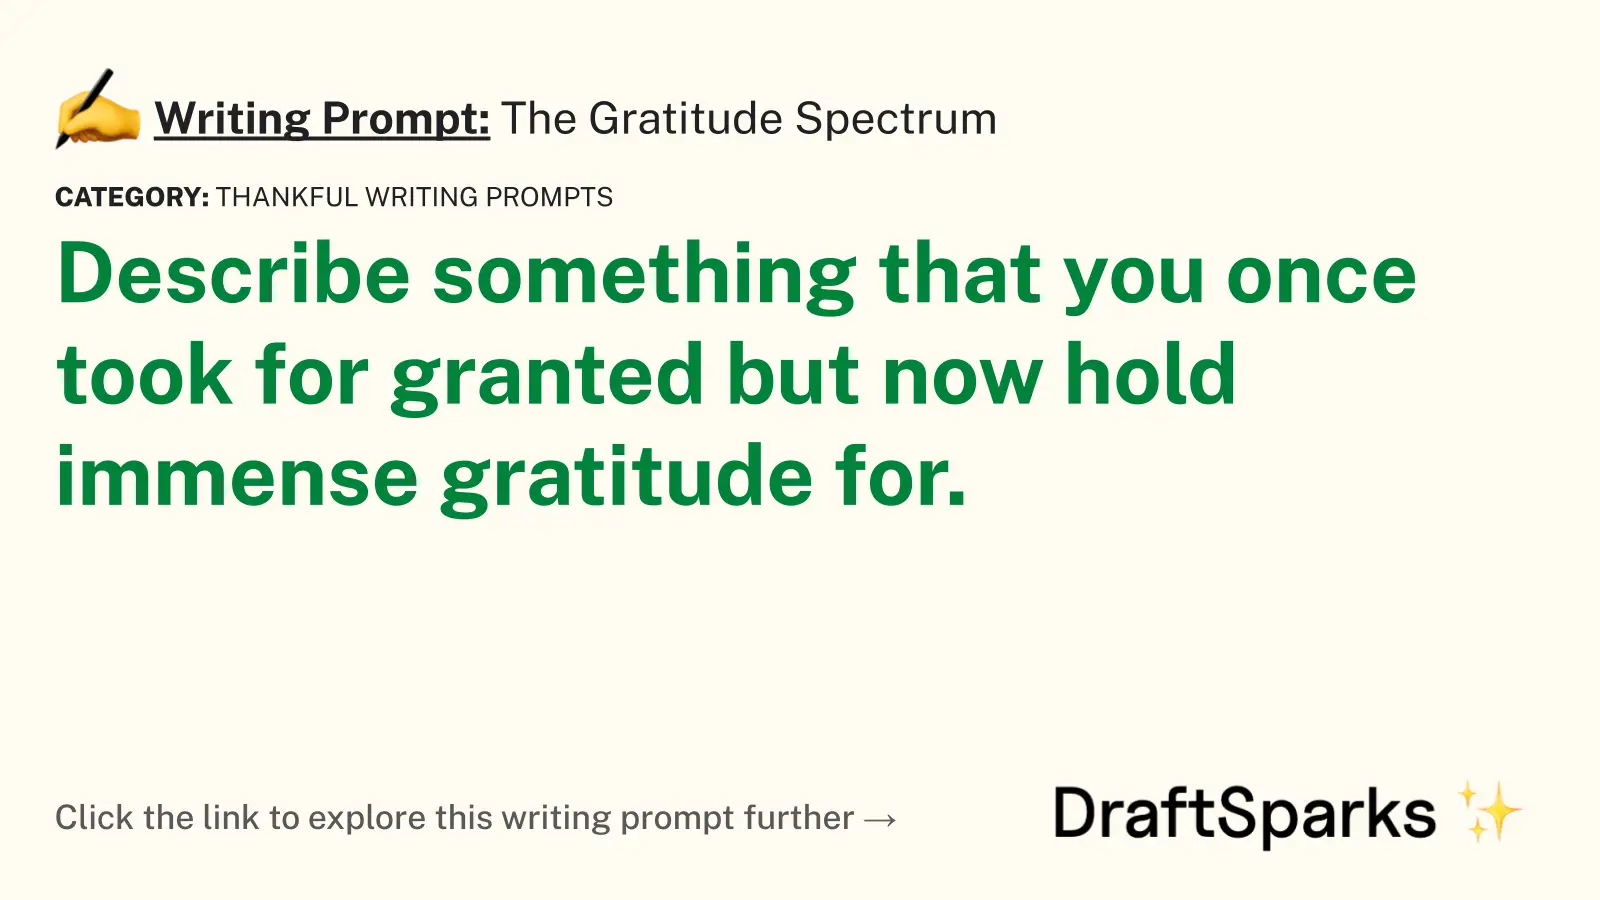 The Gratitude Spectrum